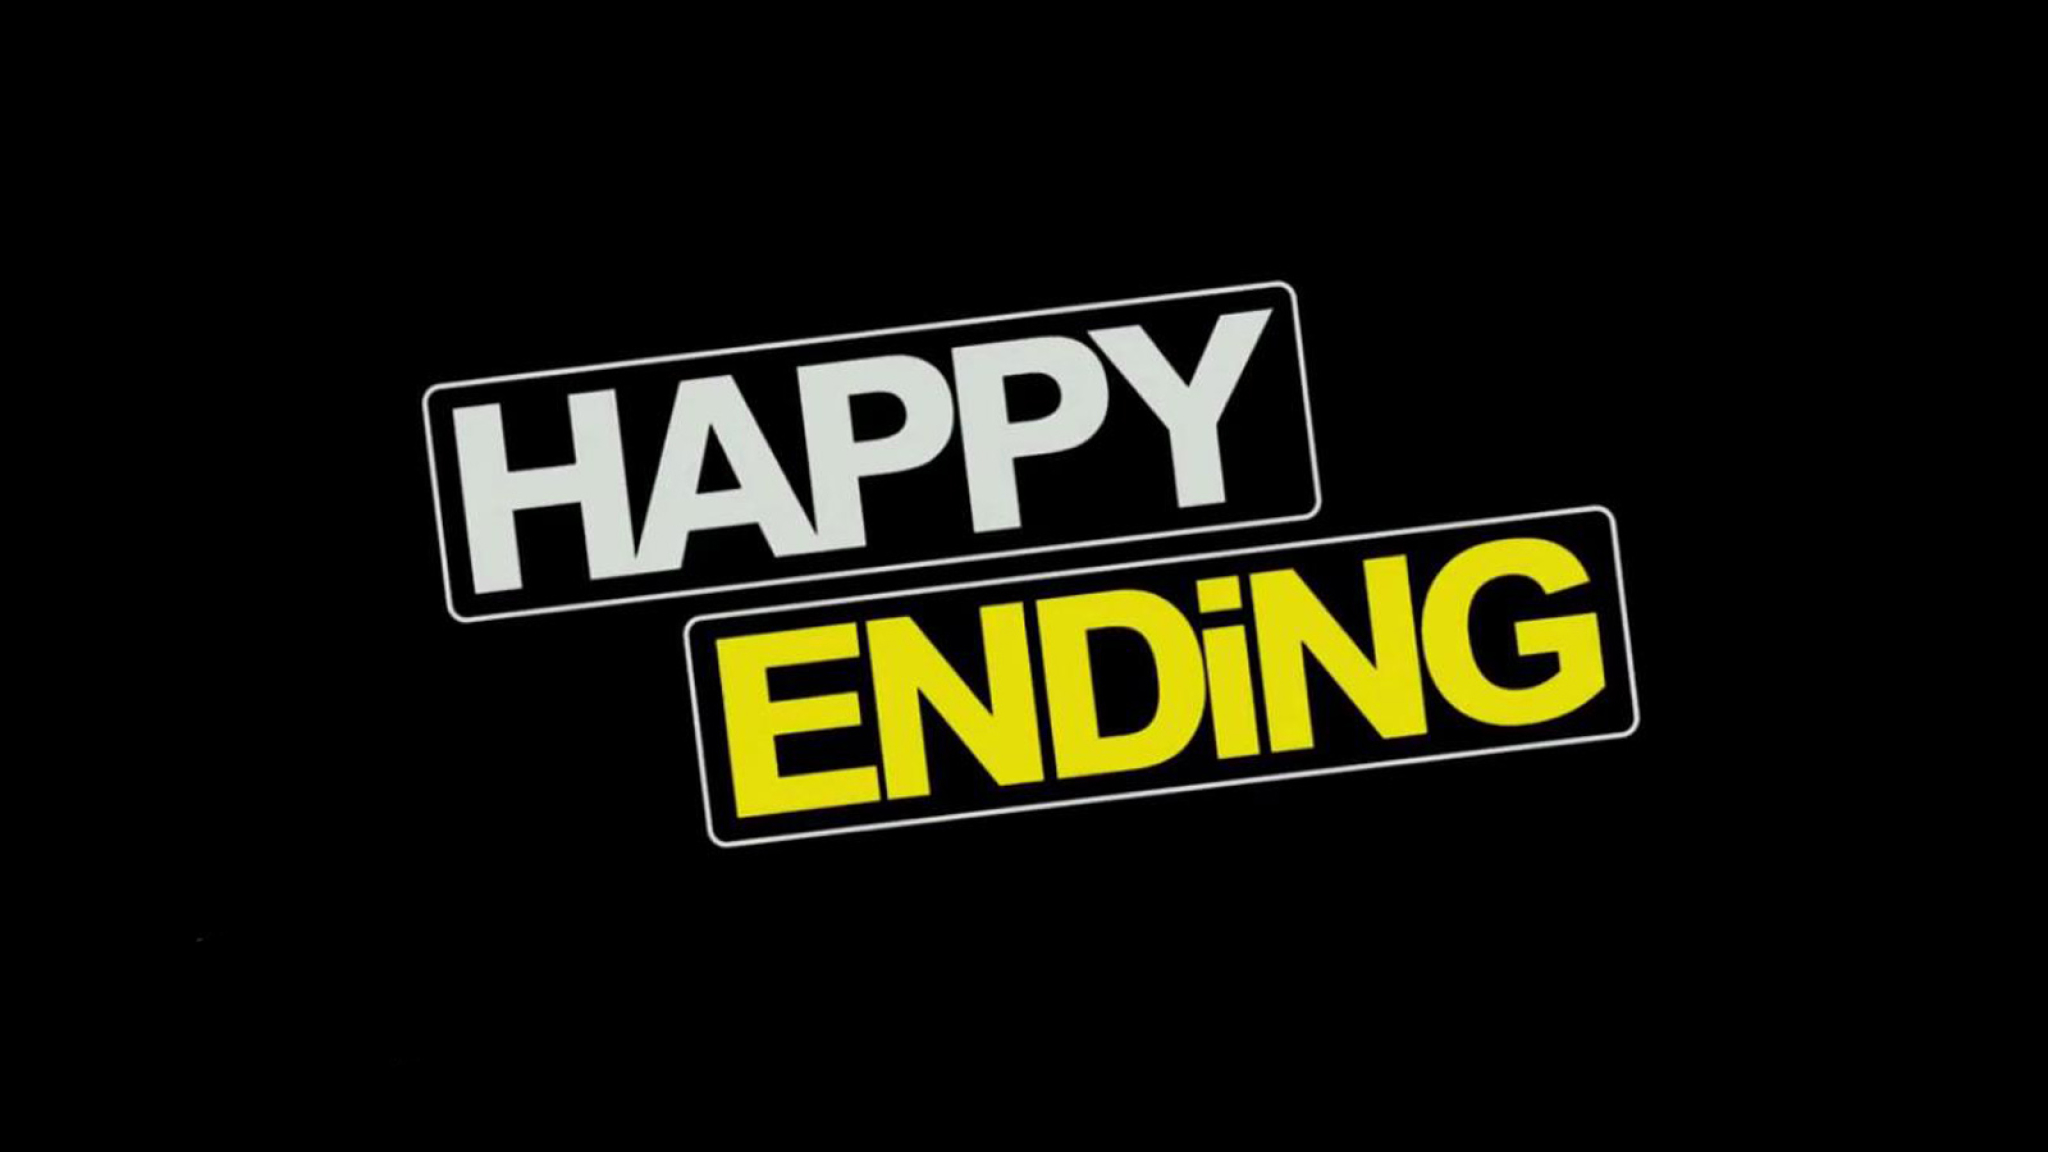 Bandspiel - Happy Ending (MIKA) course image